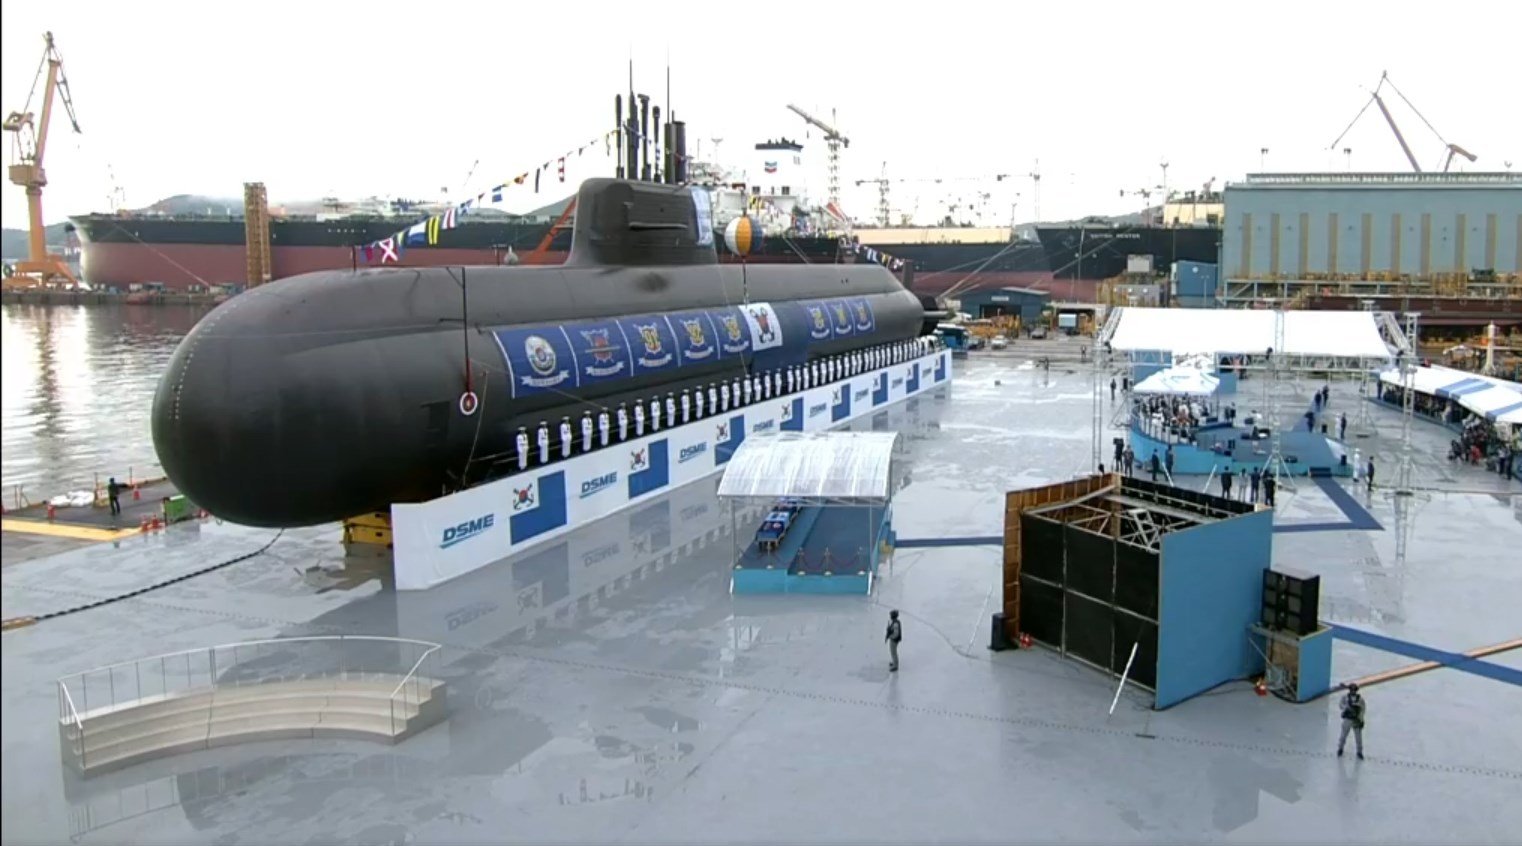  для подводных лодок (29 фото) - красивые картинки и HD фото